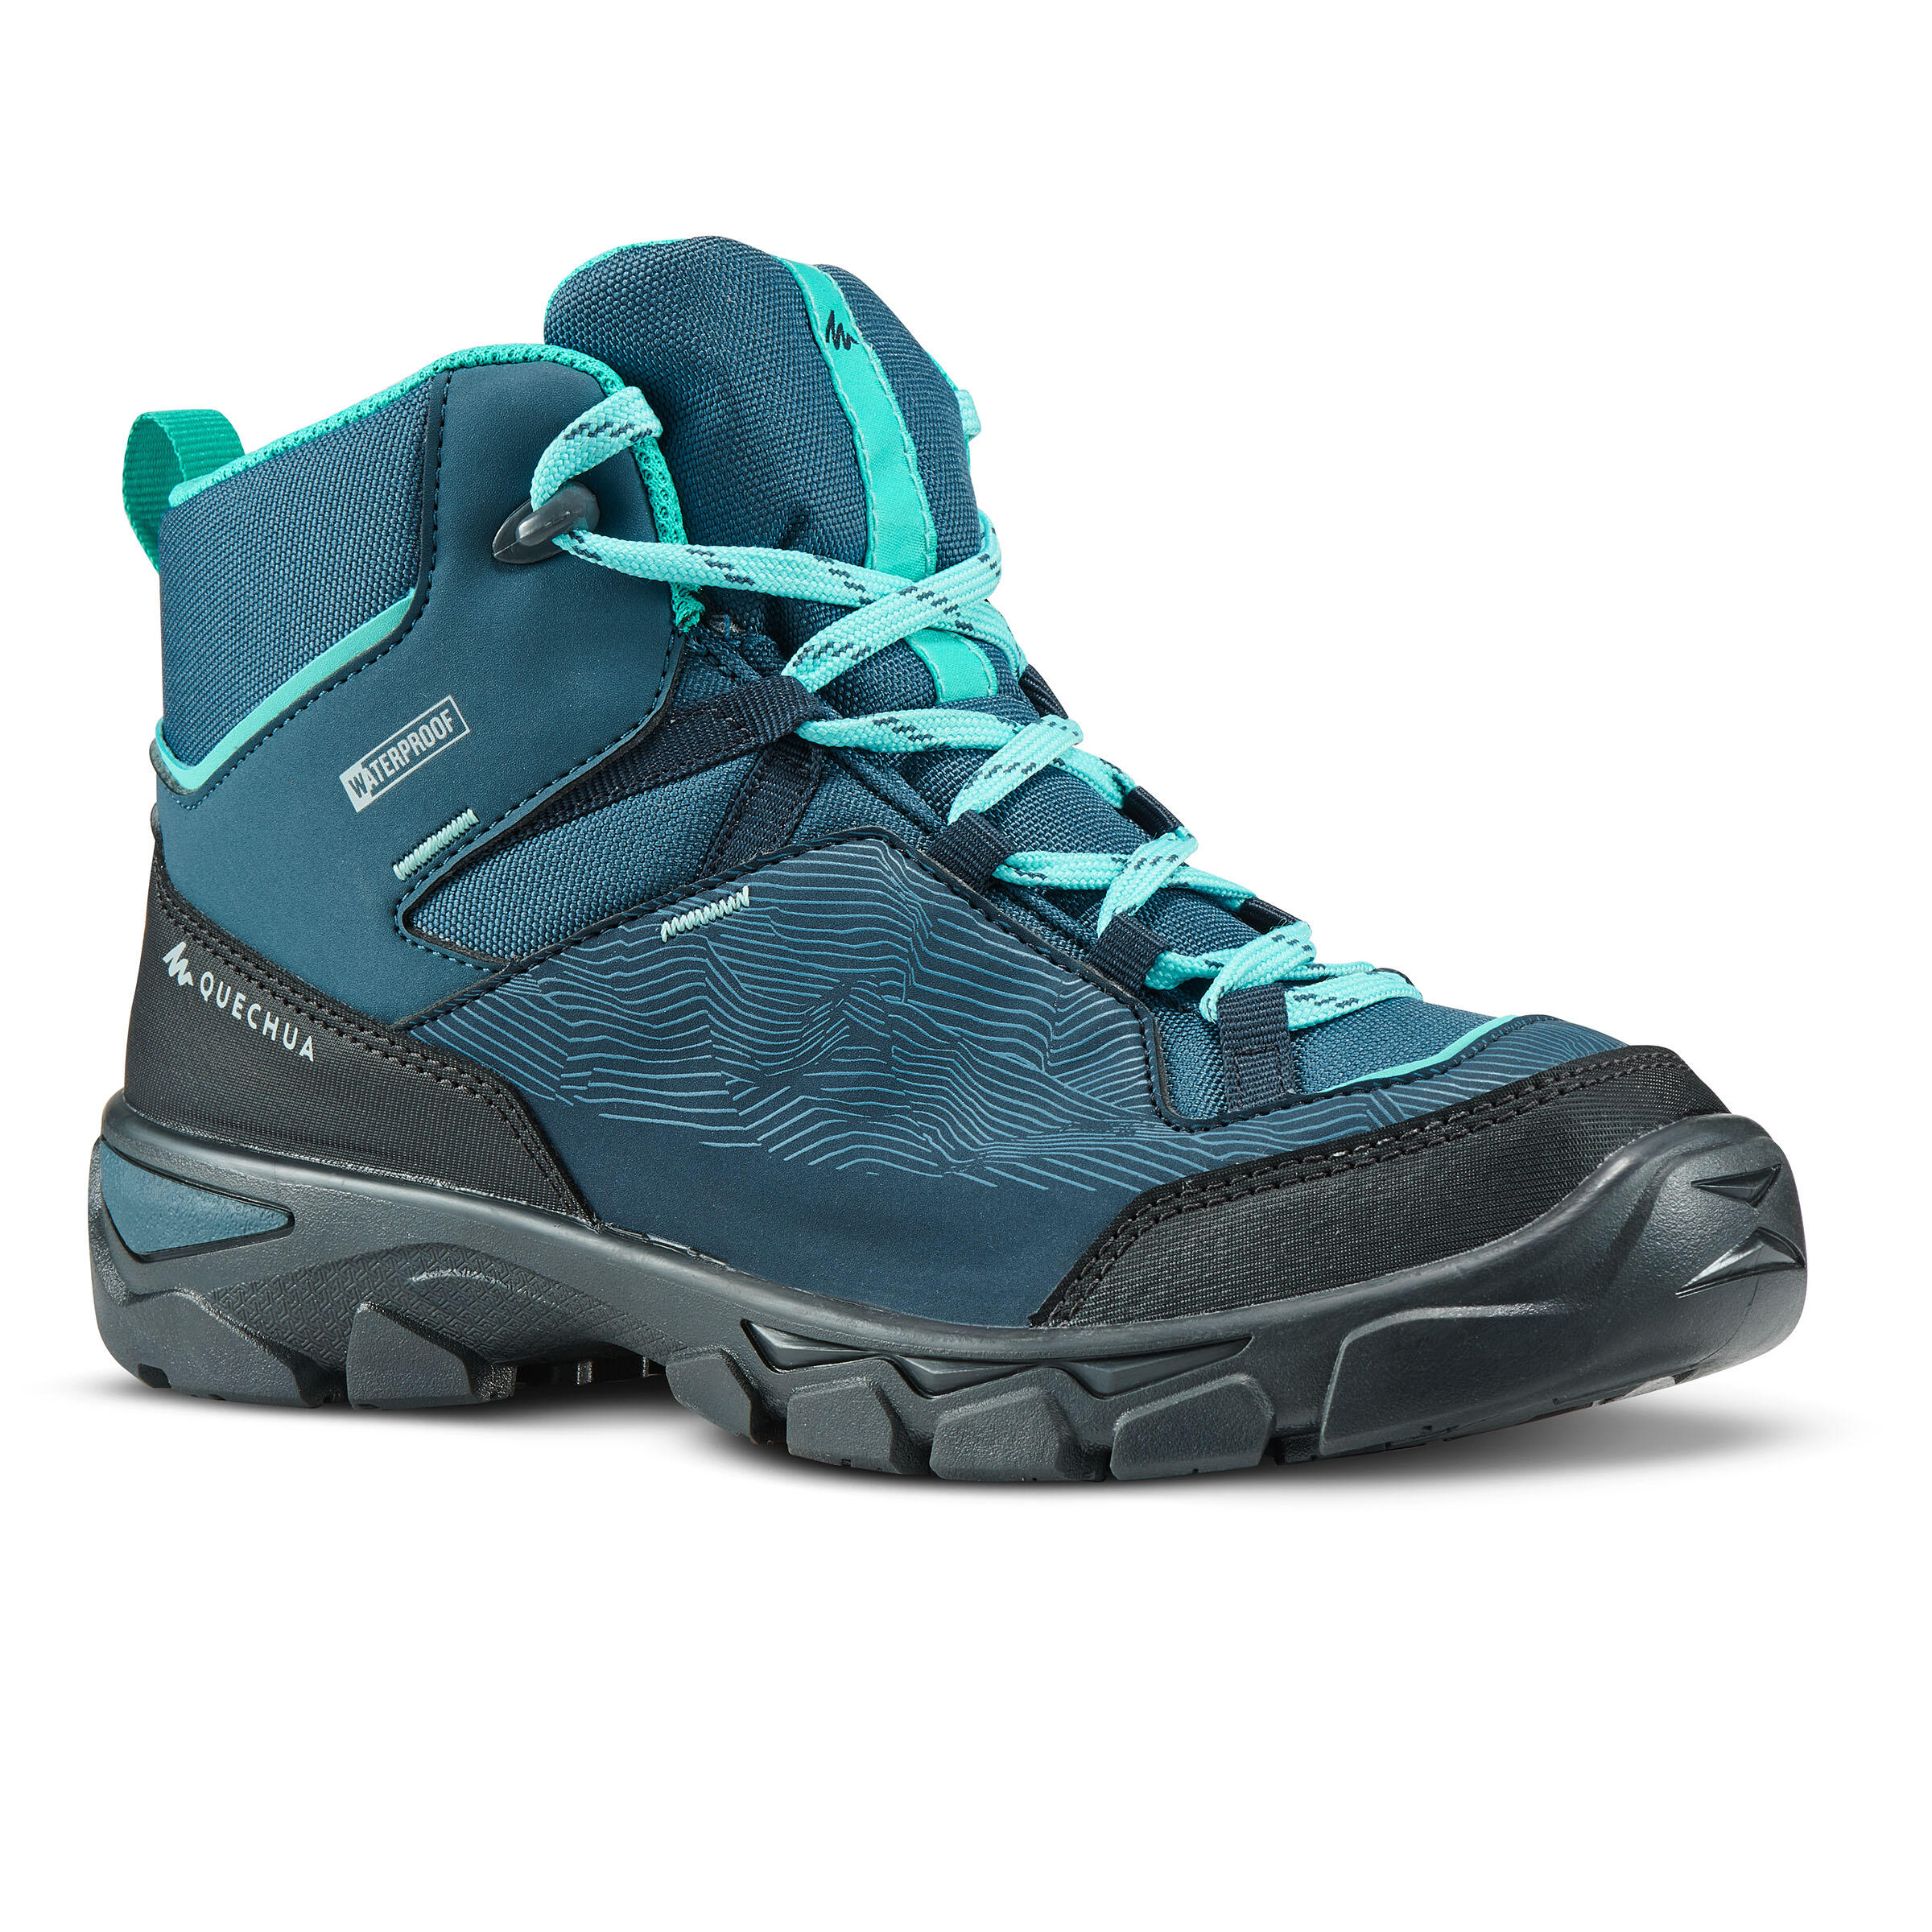 Chaussures de randonnée montantes imperméables MH120 turquoise 4-7,5 - Enfants - QUECHUA